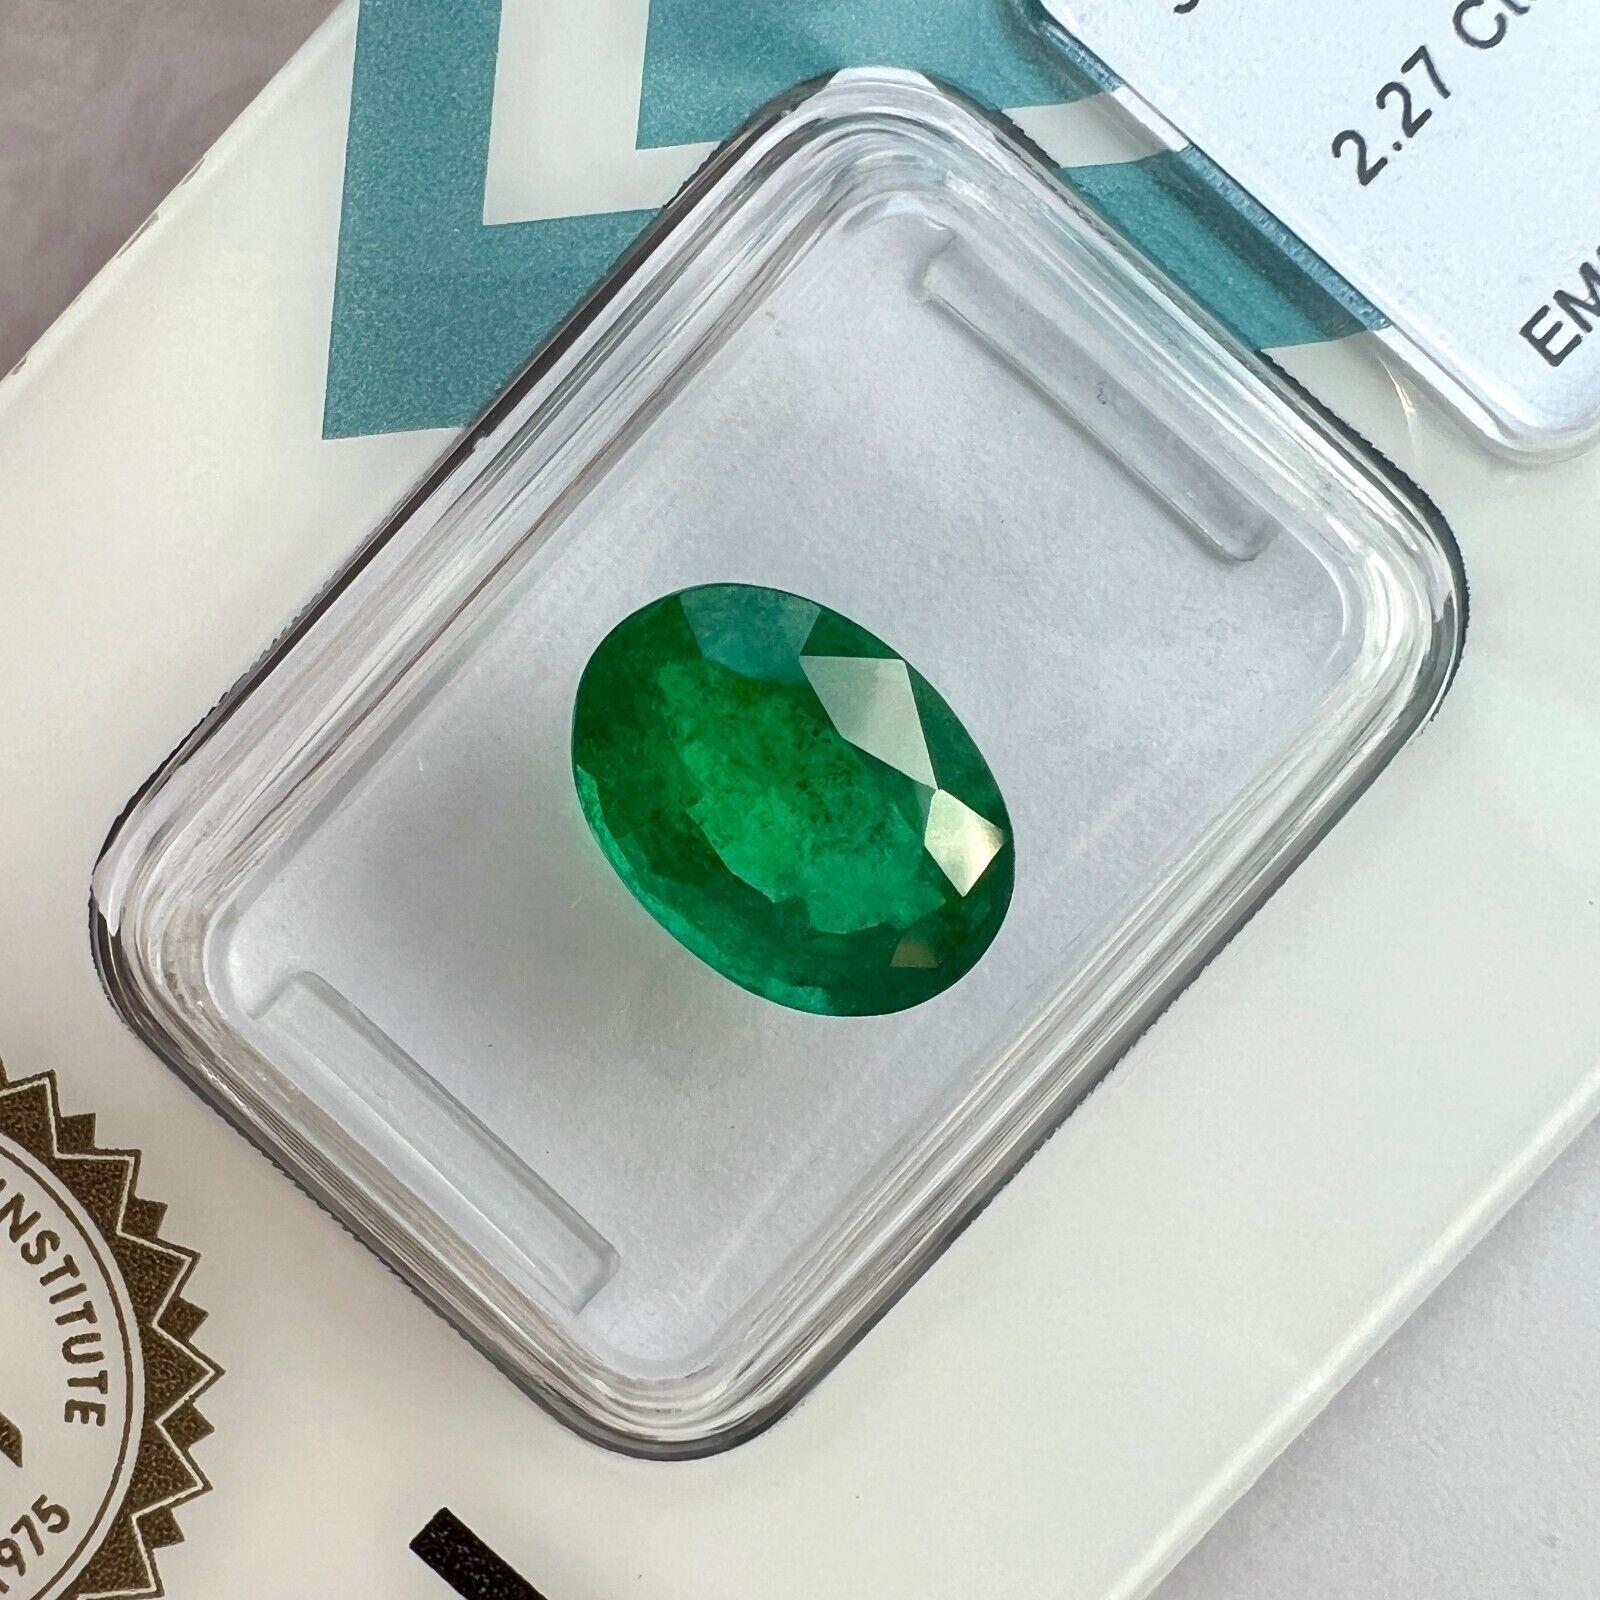 IGI Certified 2.27Ct Deep Green Natural Emerald Oval Cut Minor Oil Loose Gem

Émeraude de Zambie certifiée IGI, taille ovale, d'un vert profond.
Émeraude de 2,27 carats d'une belle couleur vert foncé. Il est même décrit par IGI comme étant de 